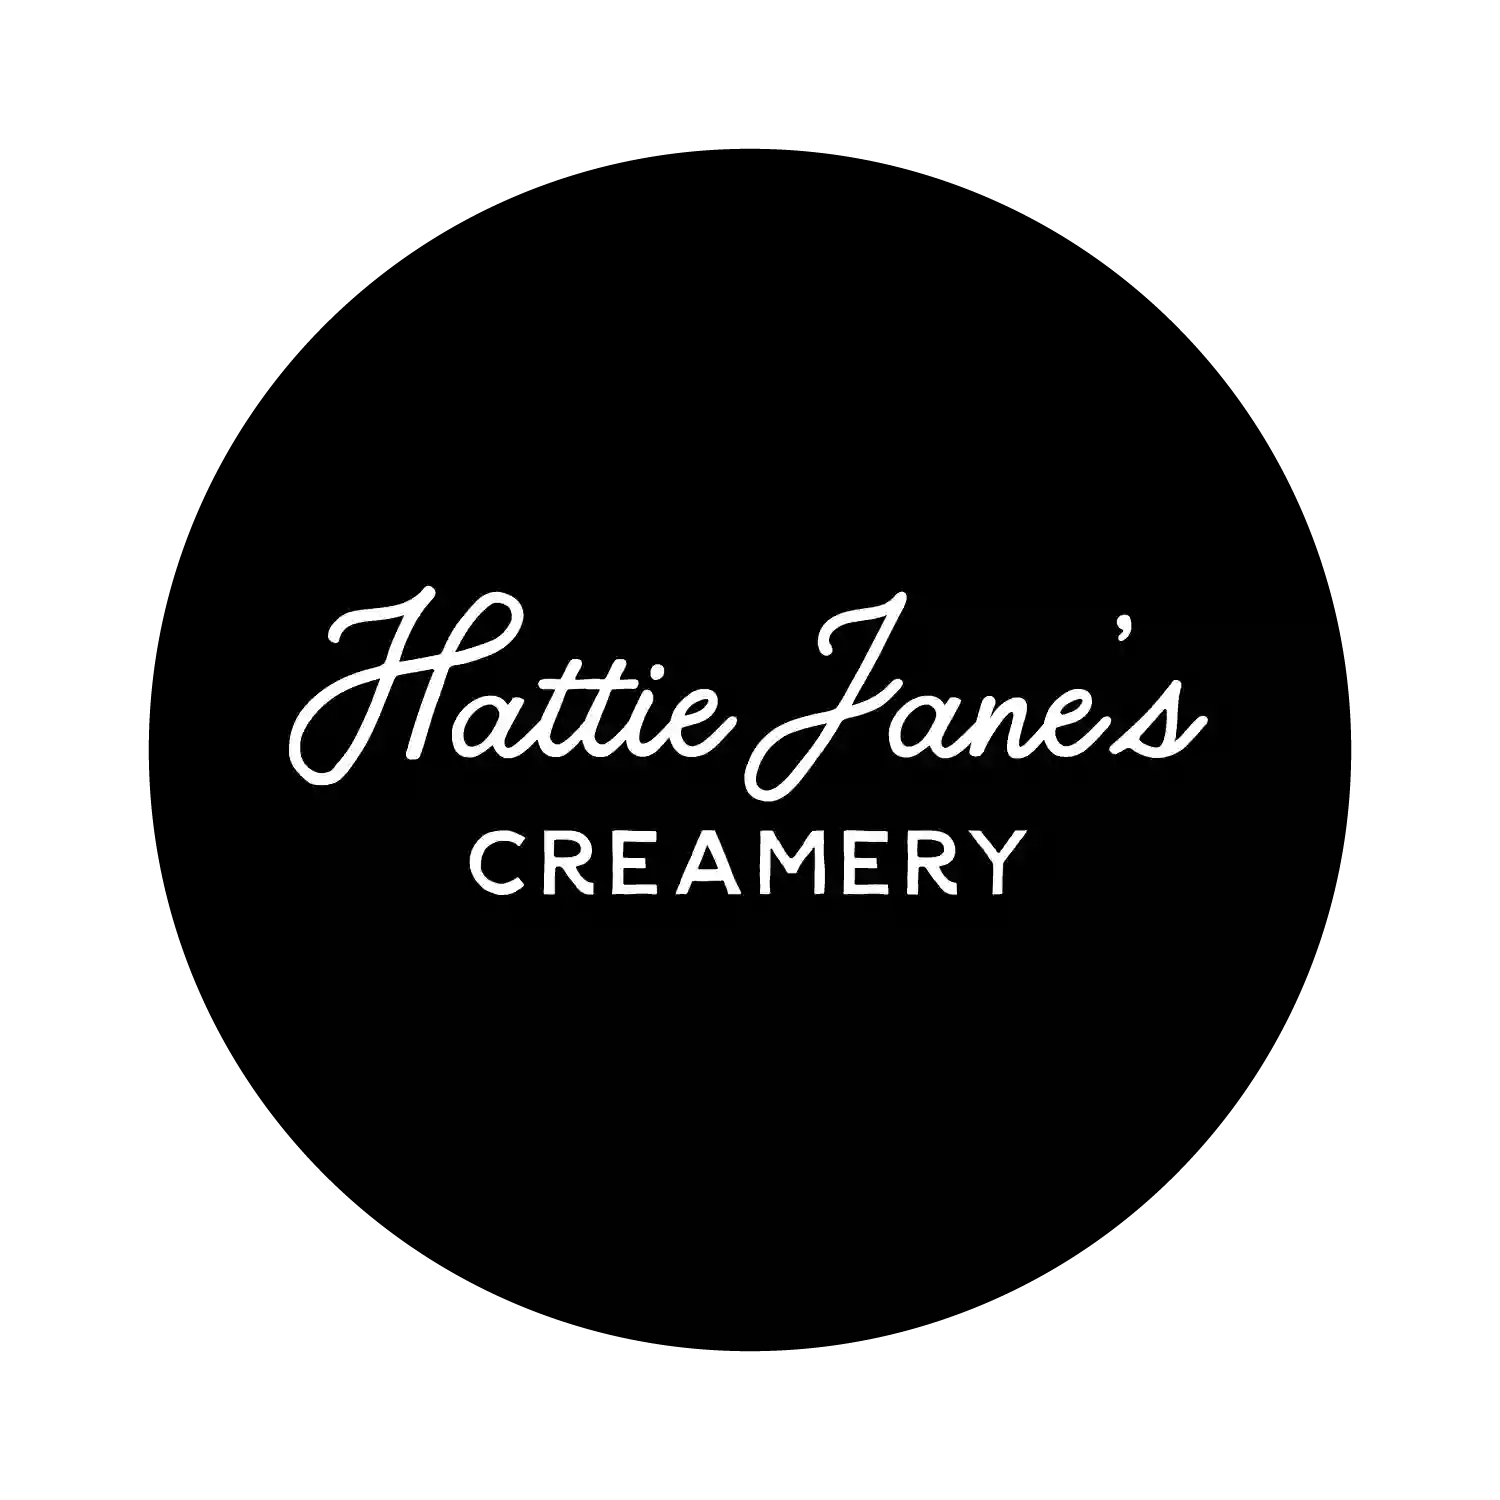 Hattie Jane's Creamery in Murfreesboro